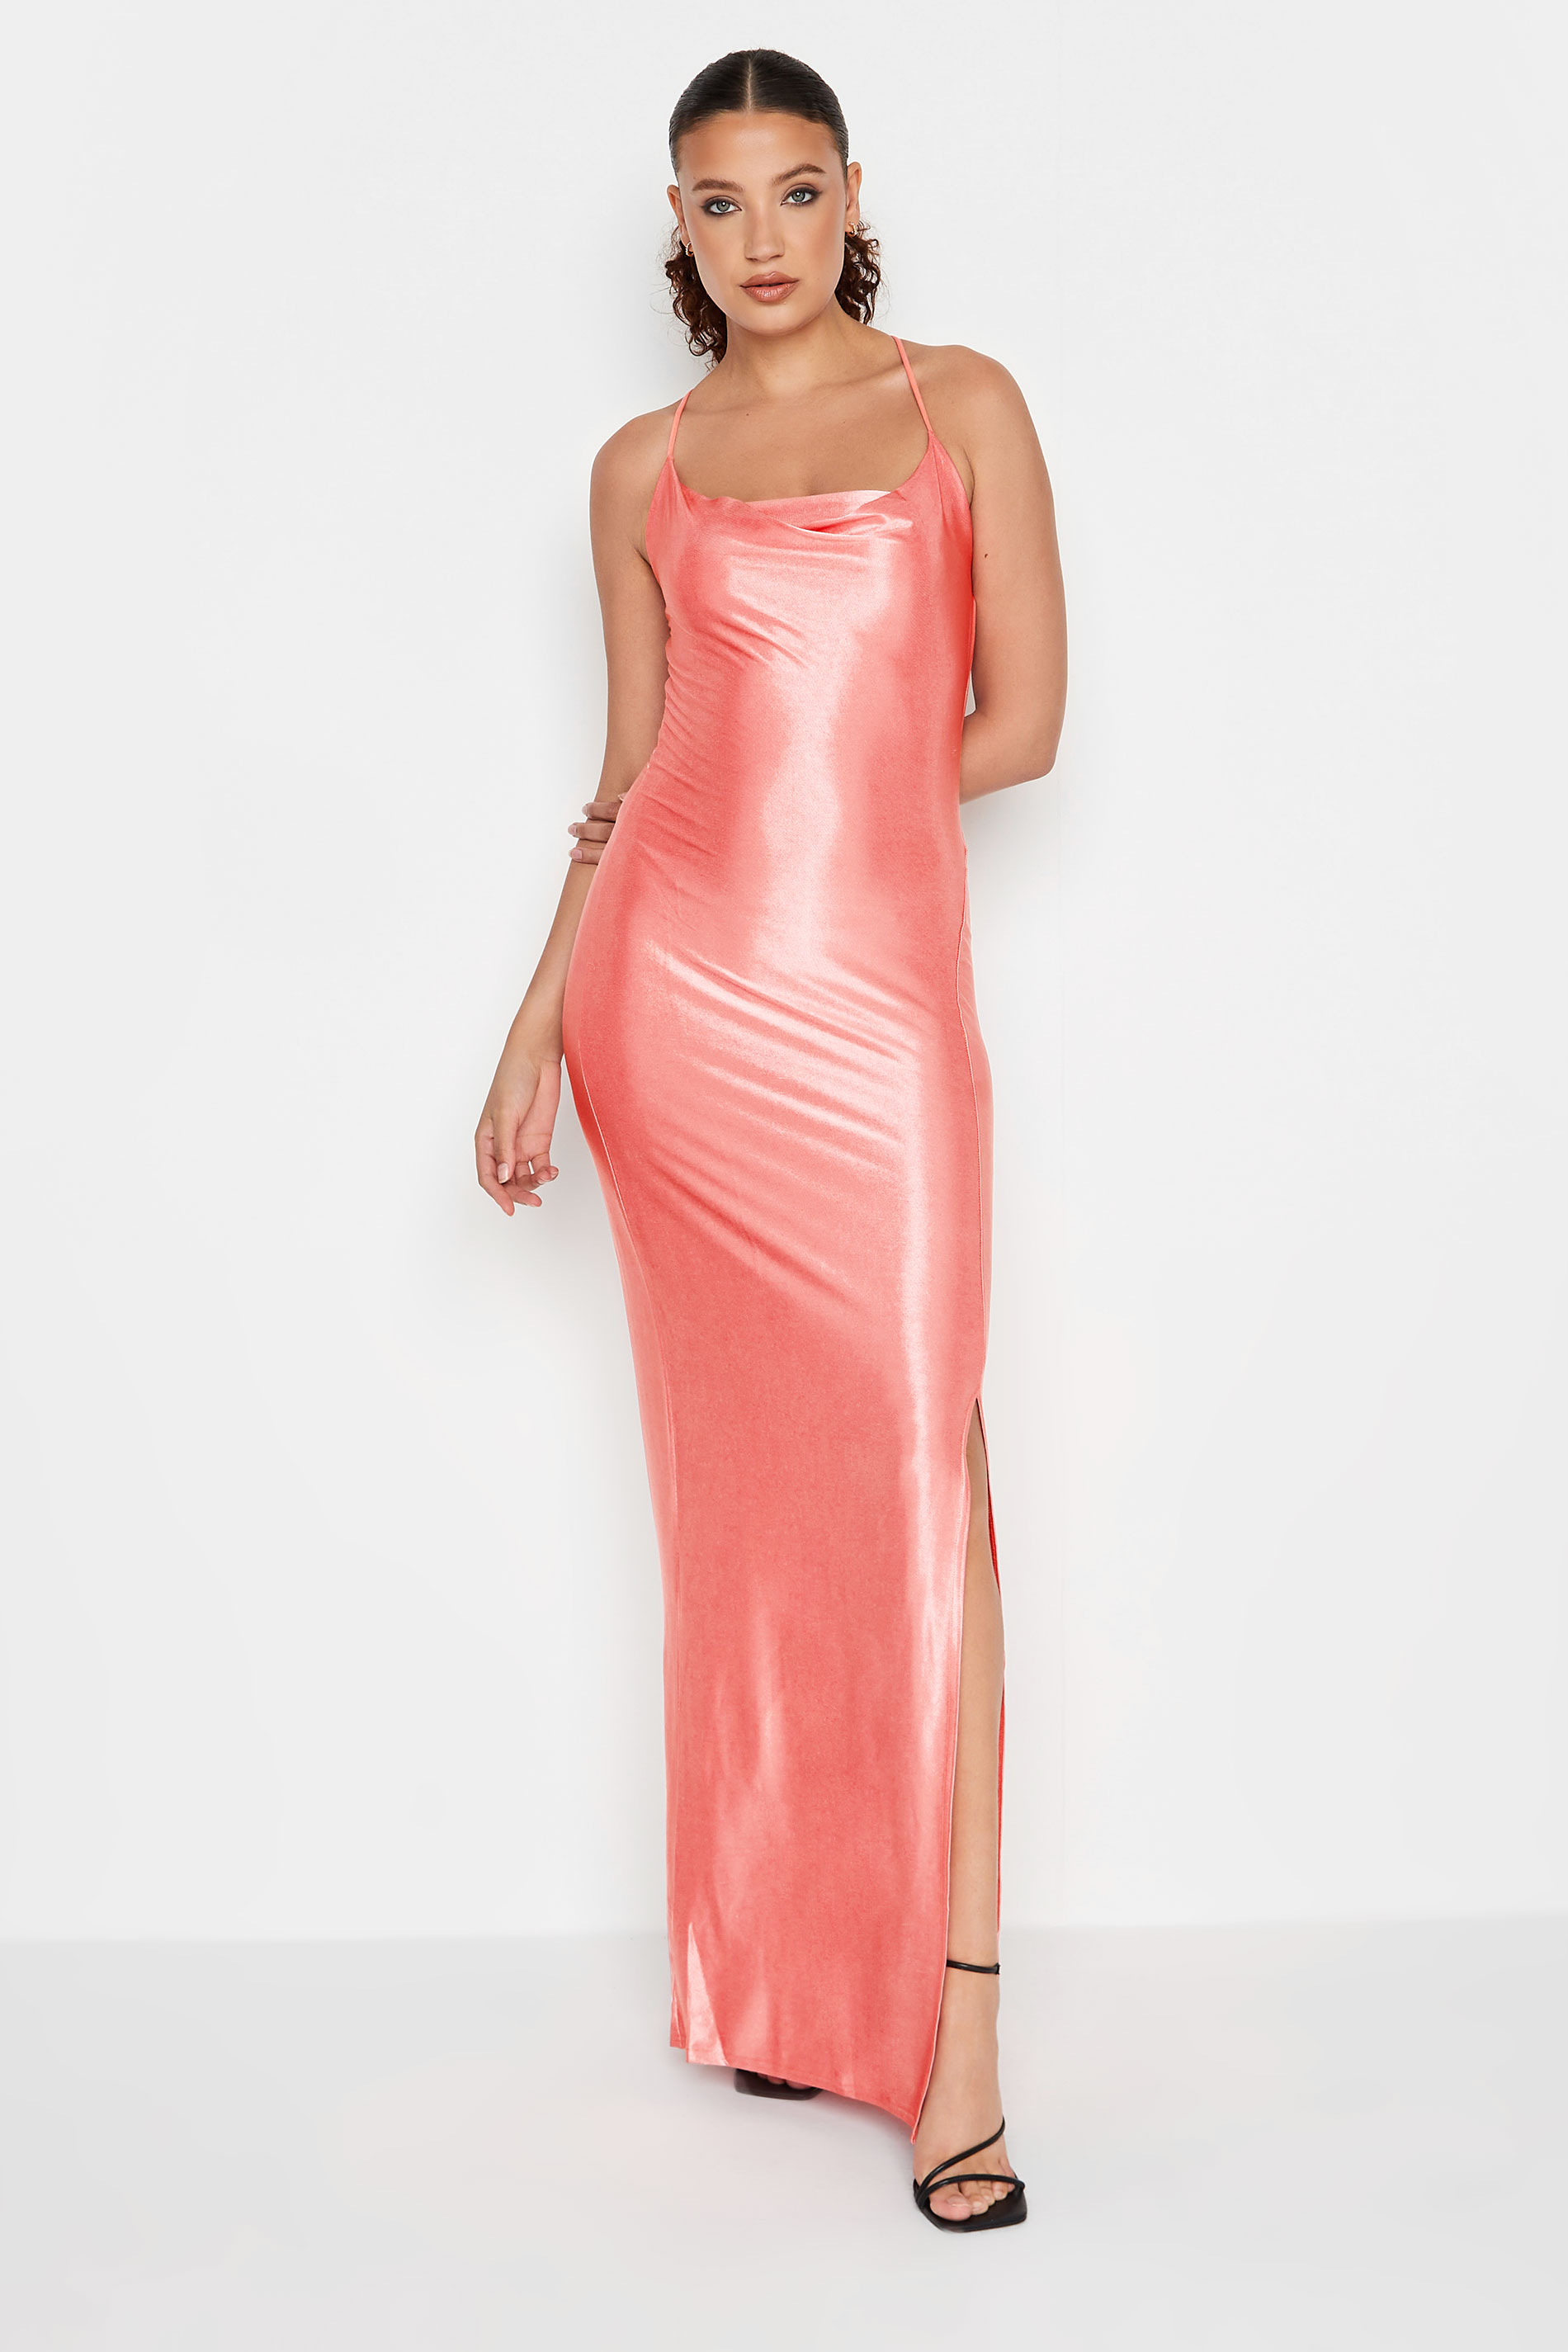 LTS Tall Women's Pink Slinky Cowl Neck Maxi Dress | Long Tall Sally 2